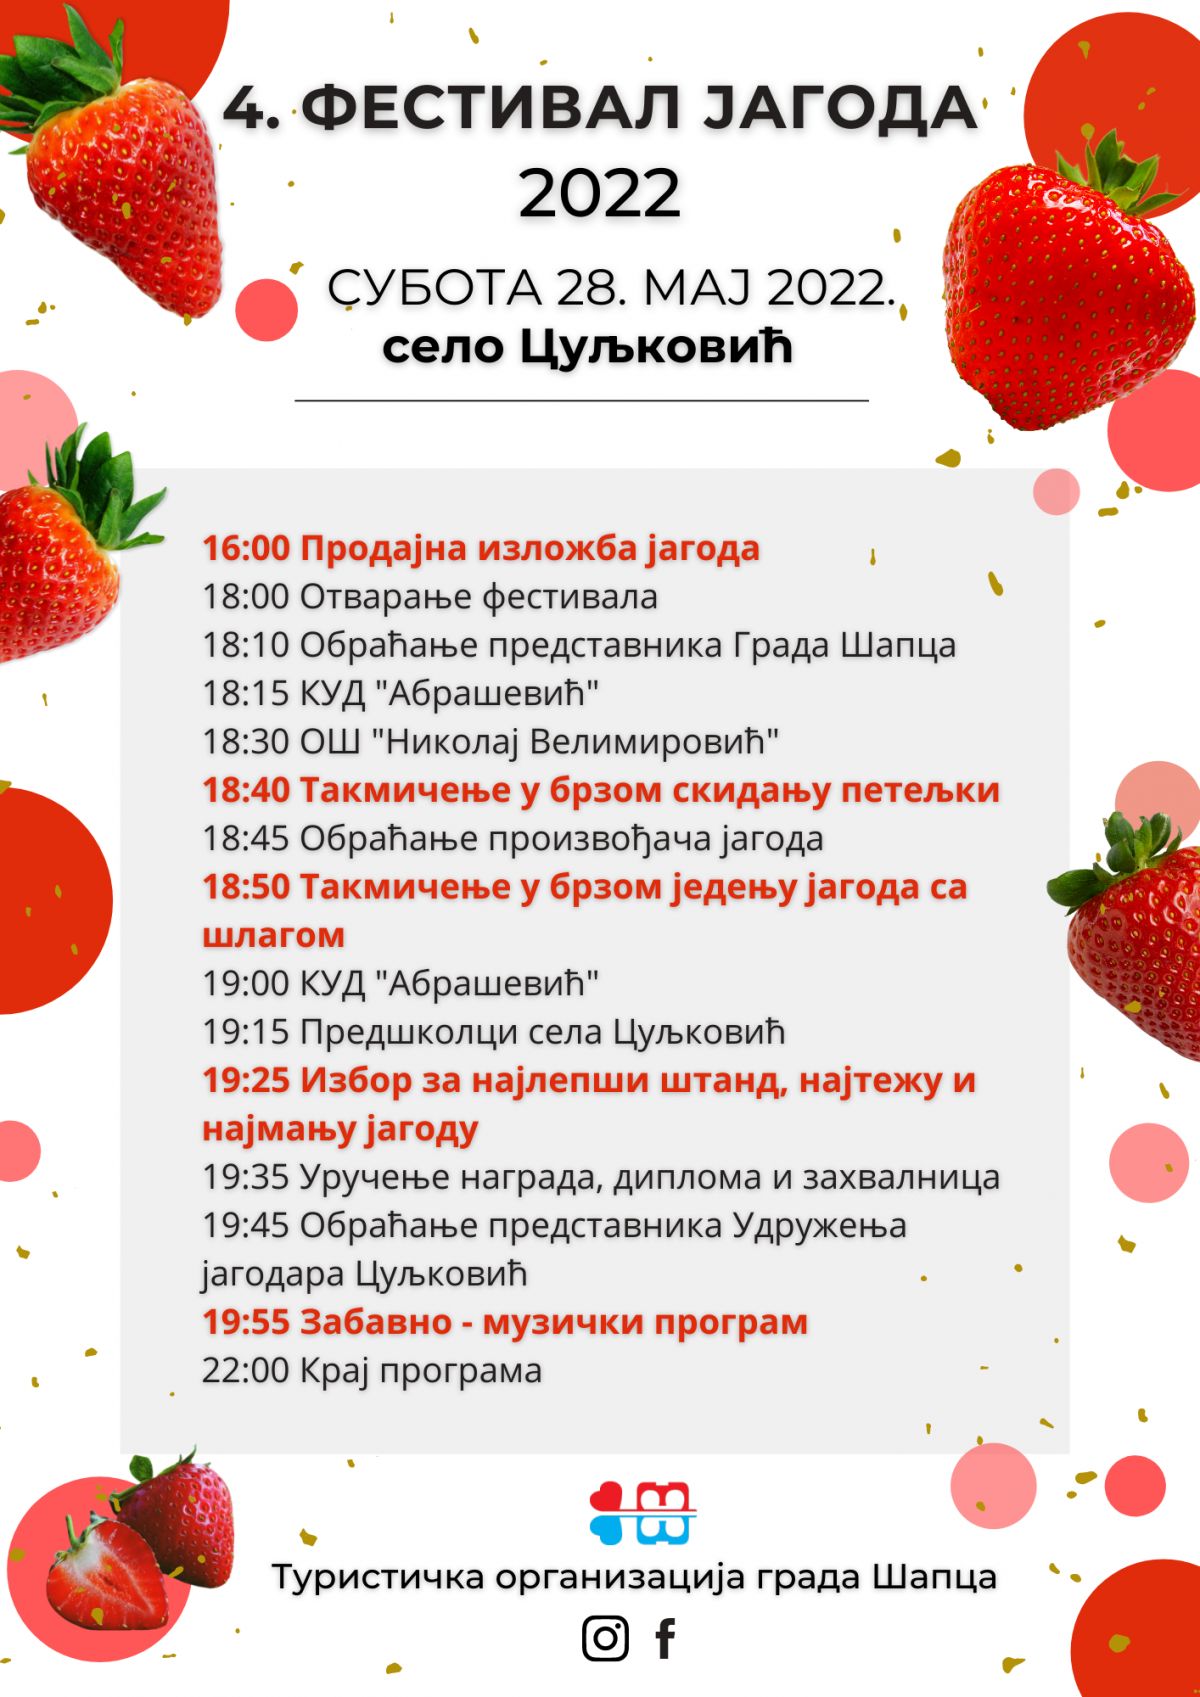 Фестивал јагода у Цуљковићу